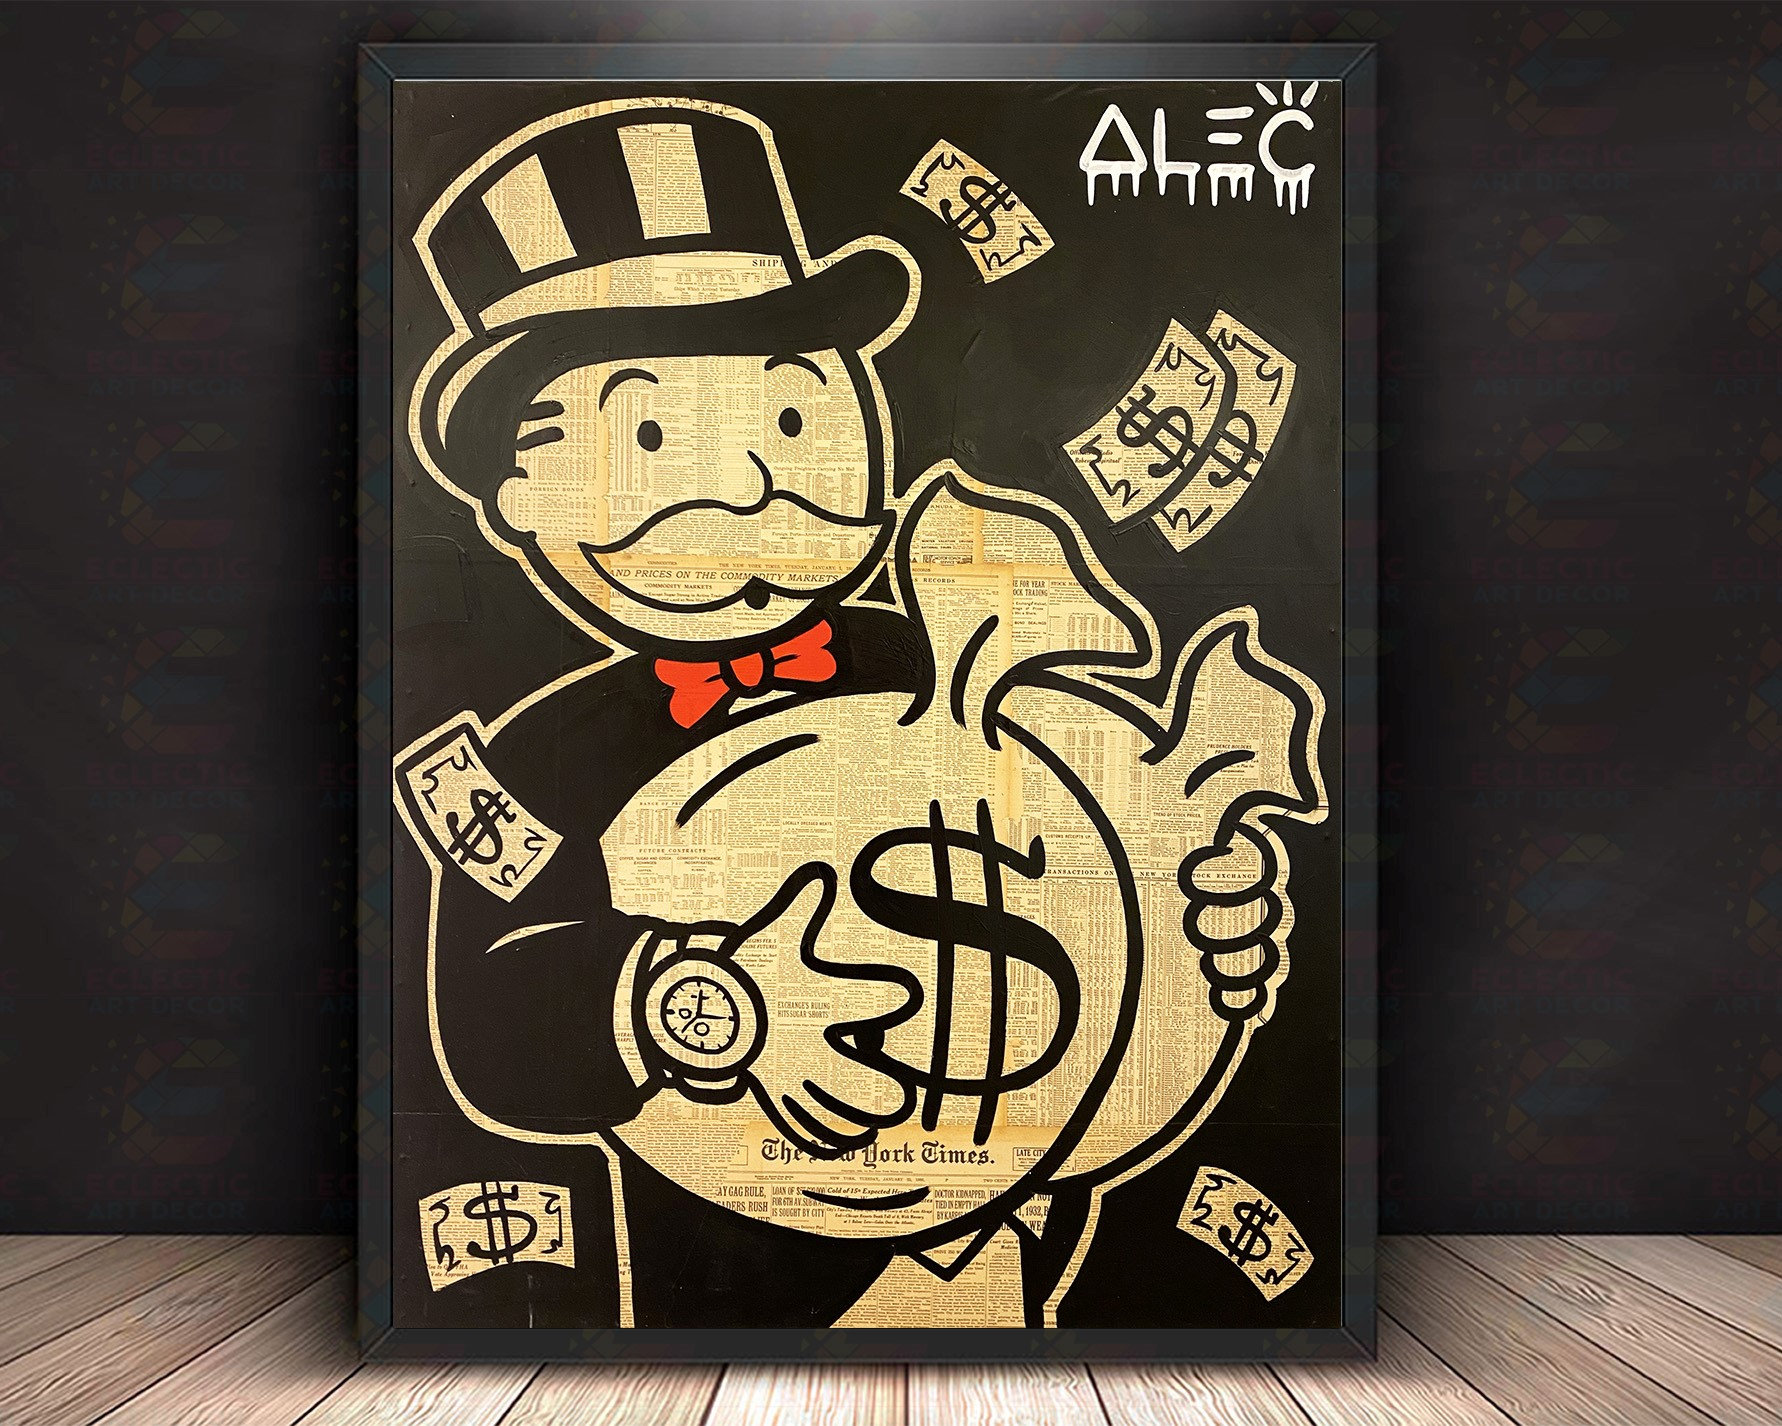 36x24" Alec Monopoly "HERMES PARIS" HD print on